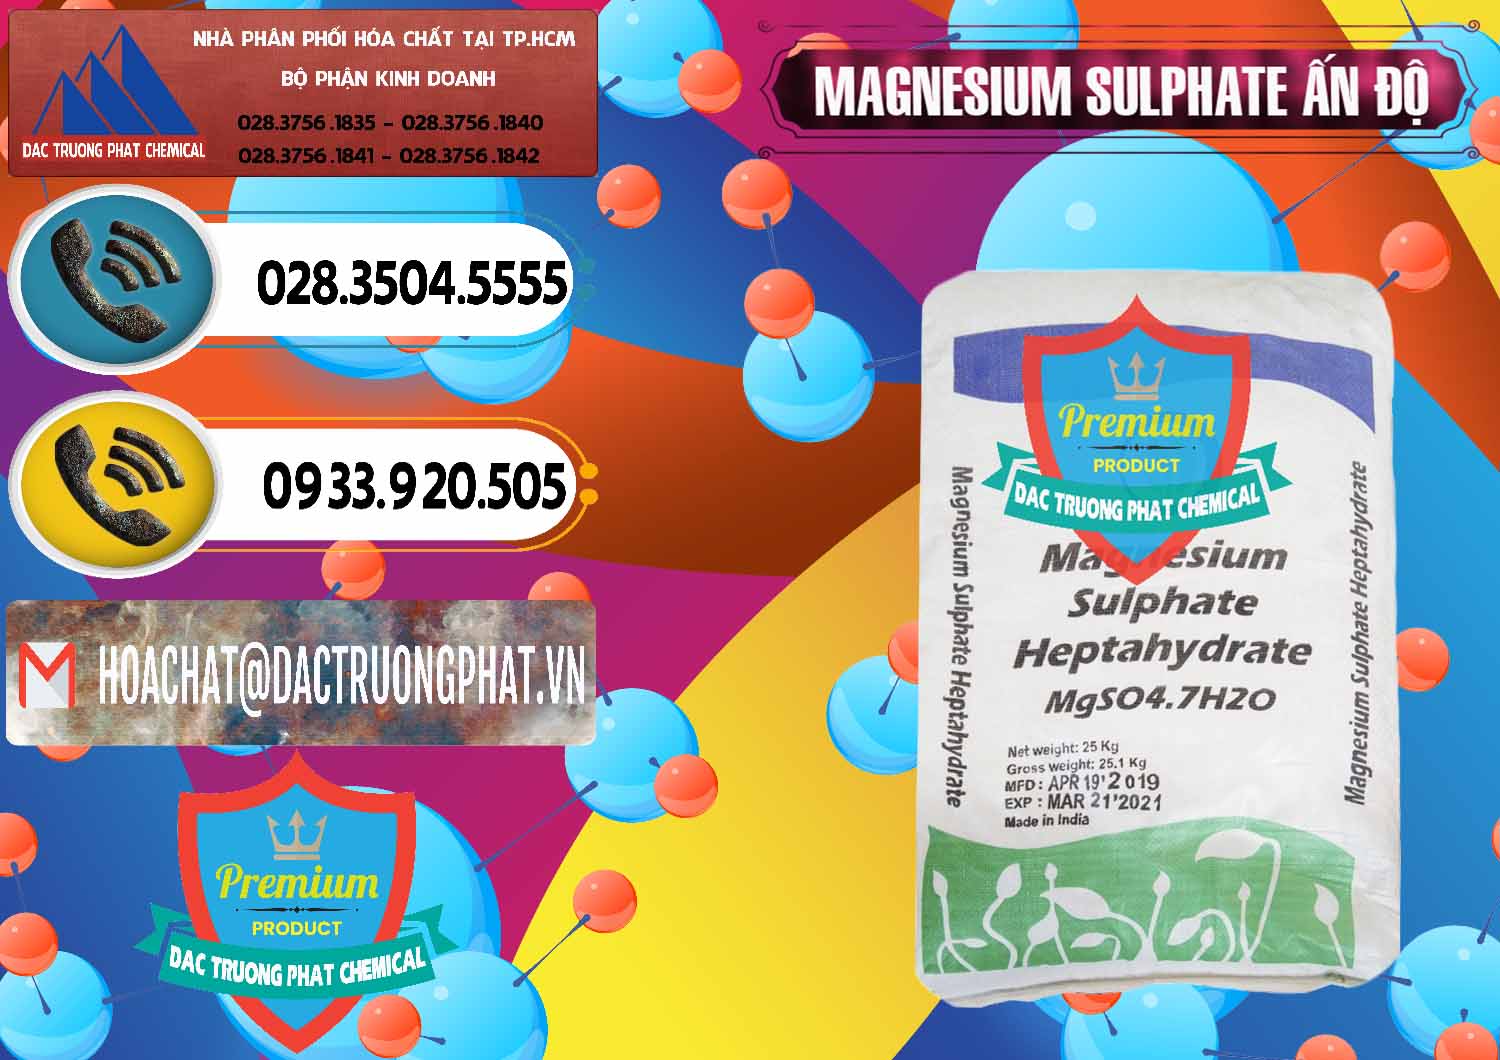 Đơn vị cung cấp & bán MGSO4.7H2O – Magnesium Sulphate Heptahydrate Ấn Độ India - 0362 - Nhập khẩu ( phân phối ) hóa chất tại TP.HCM - hoachatdetnhuom.vn